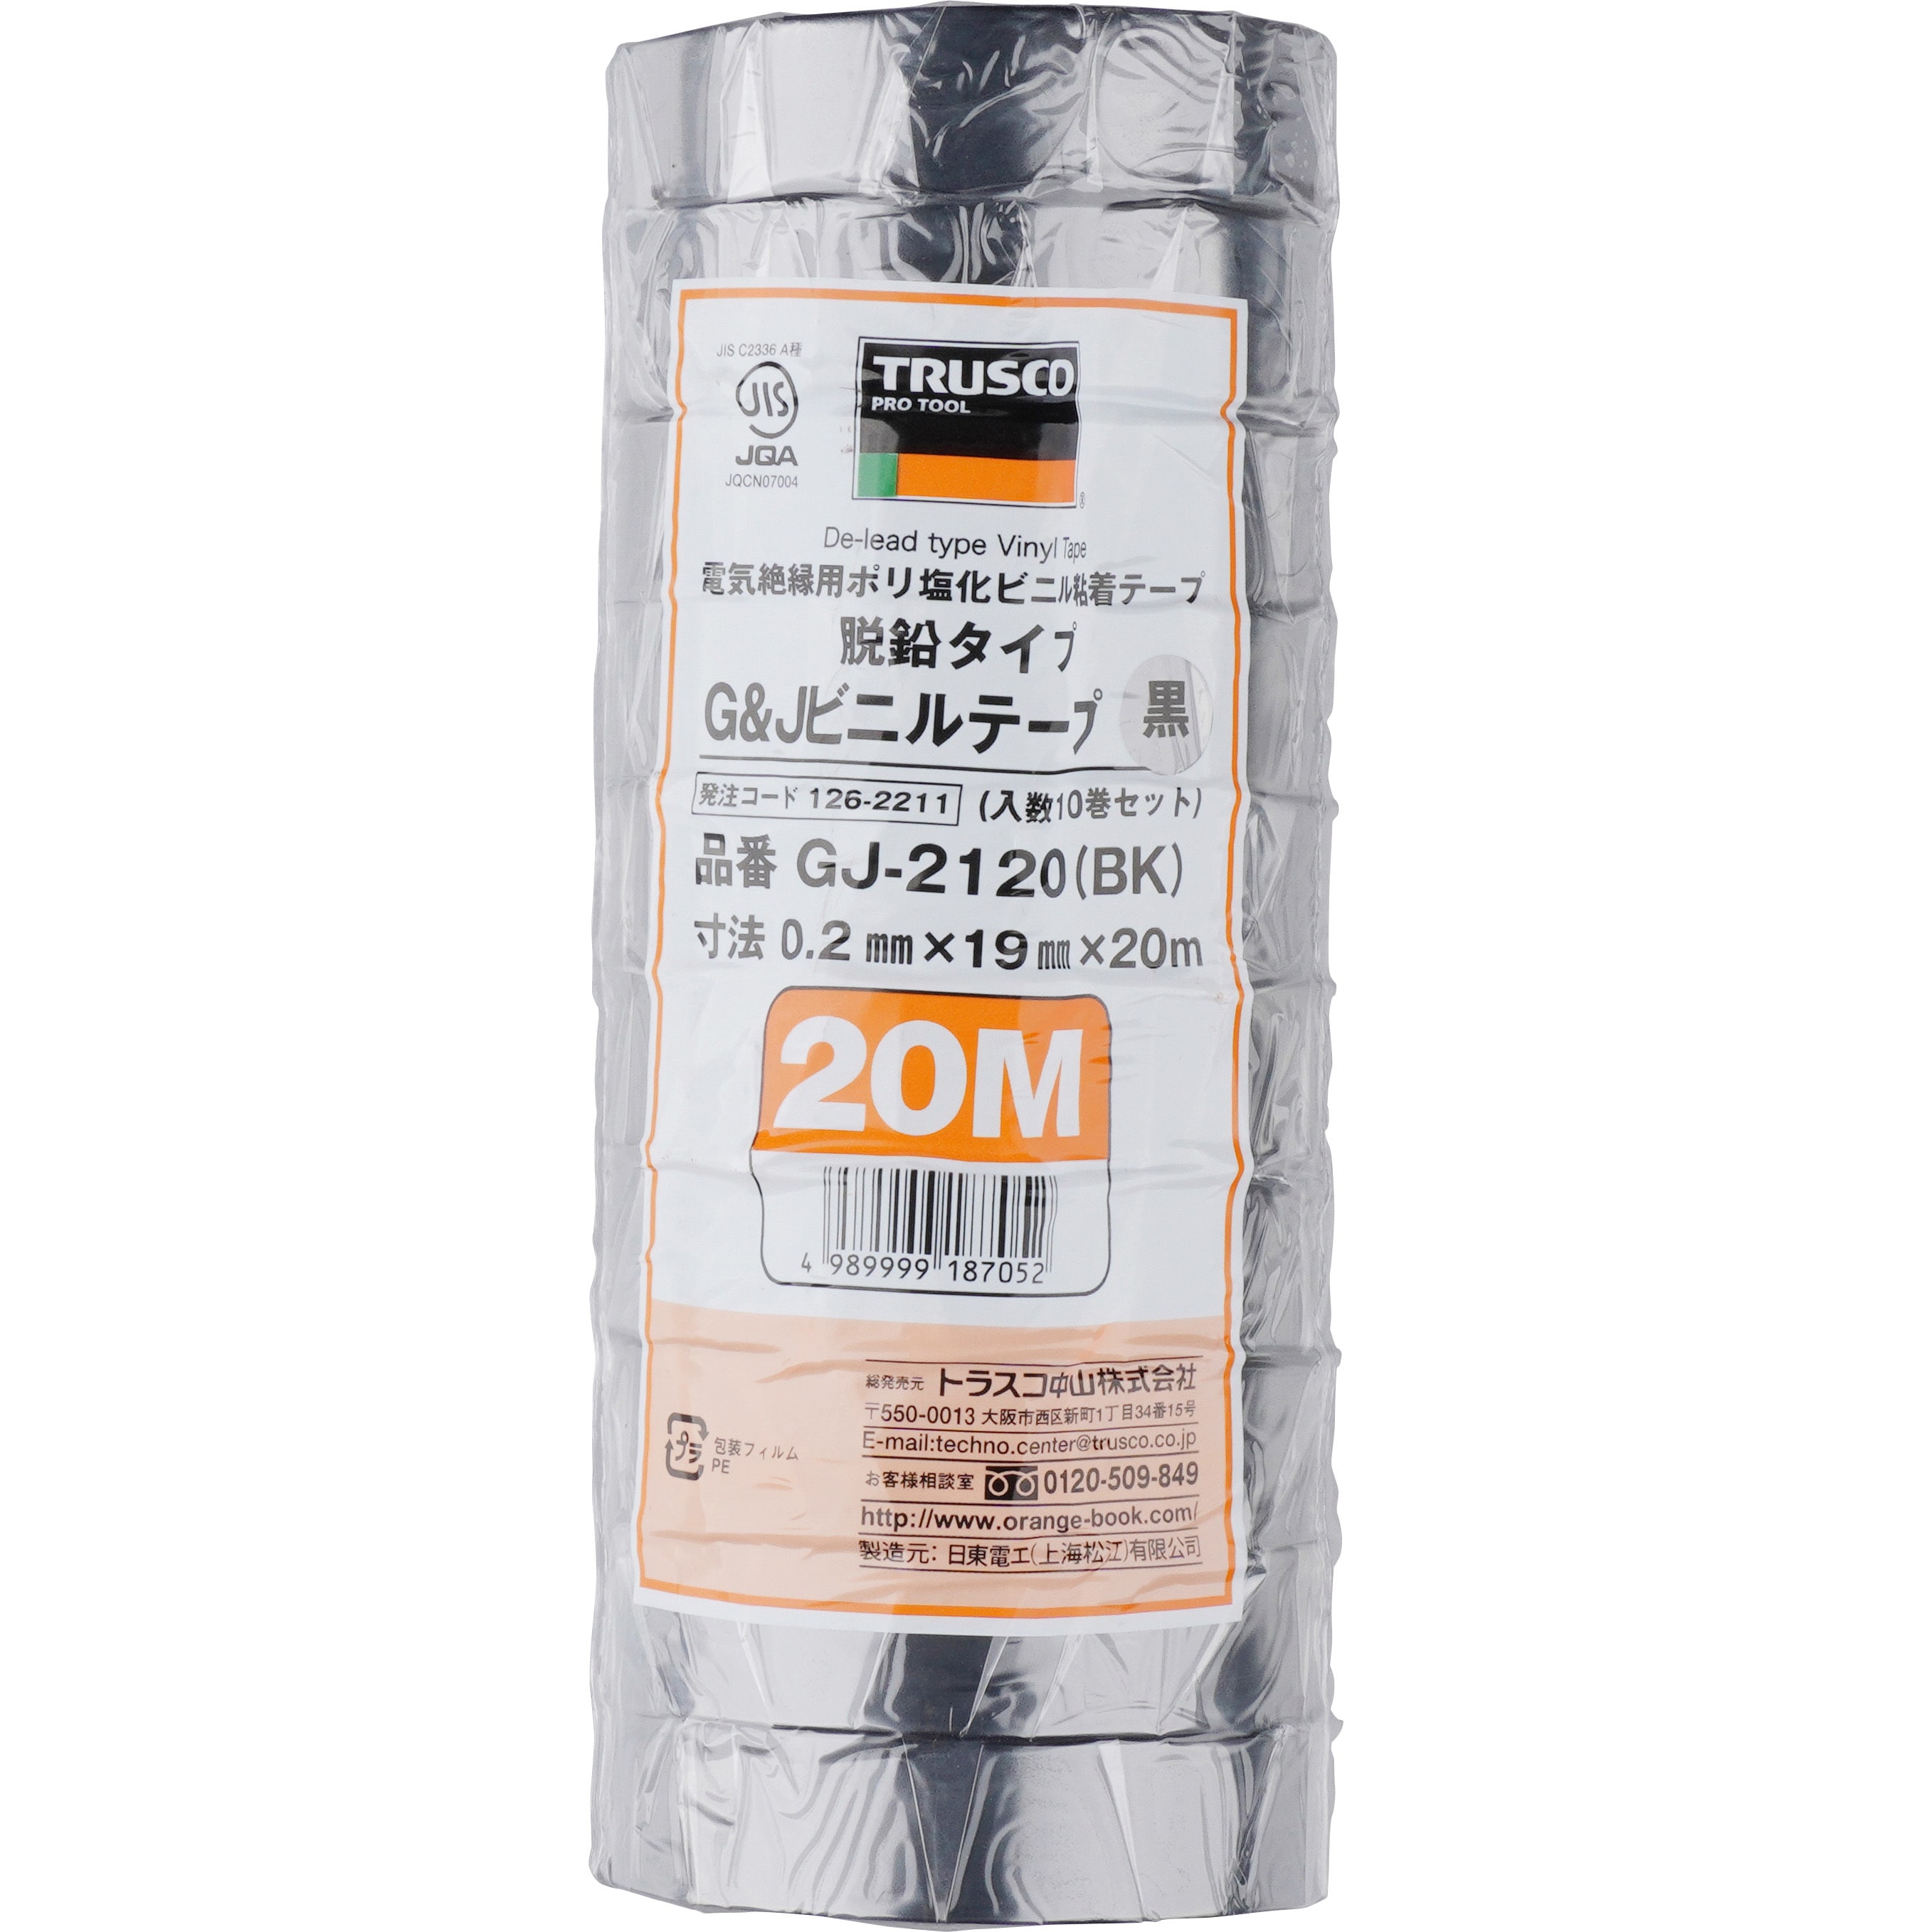 GJ-2120 BK 脱鉛タイプビニールテープ20m 1パック(10巻) TRUSCO 【通販